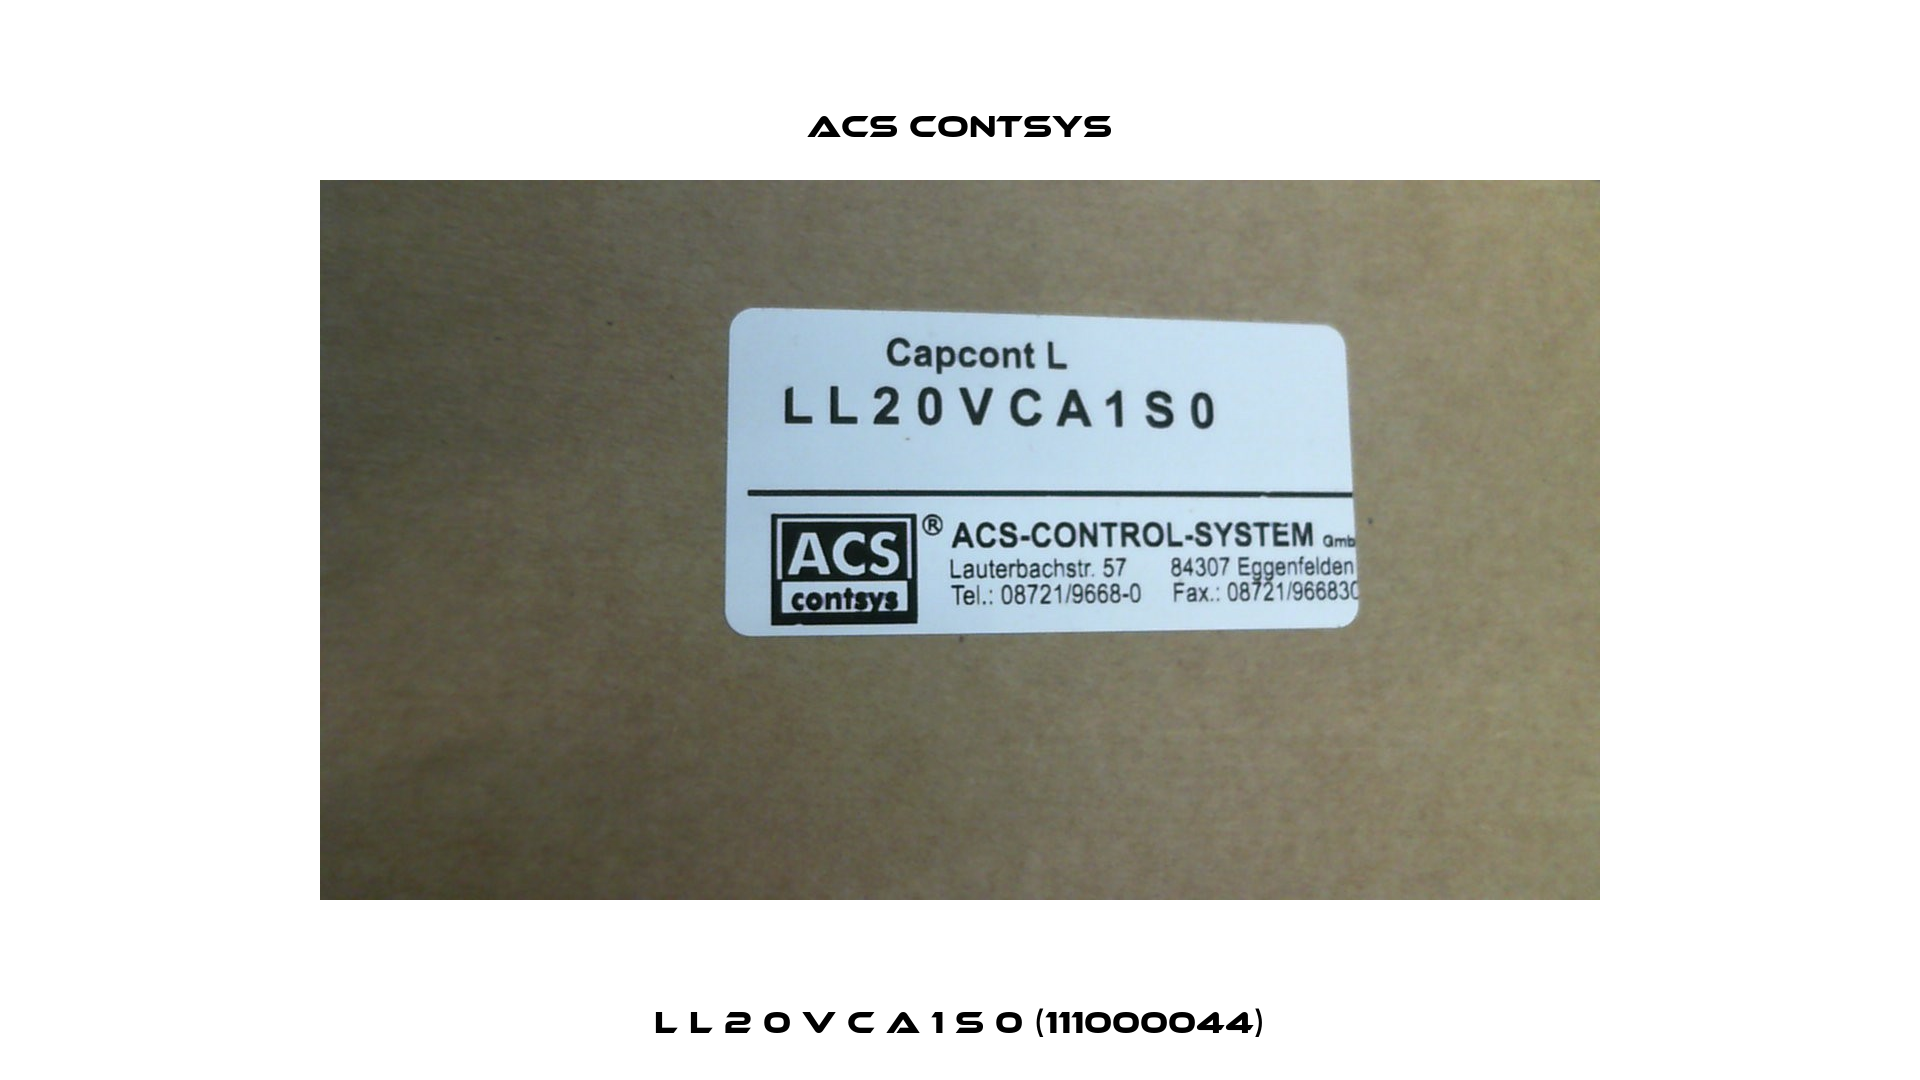 L L 2 0 V C A 1 S 0 (111000044) ACS CONTSYS